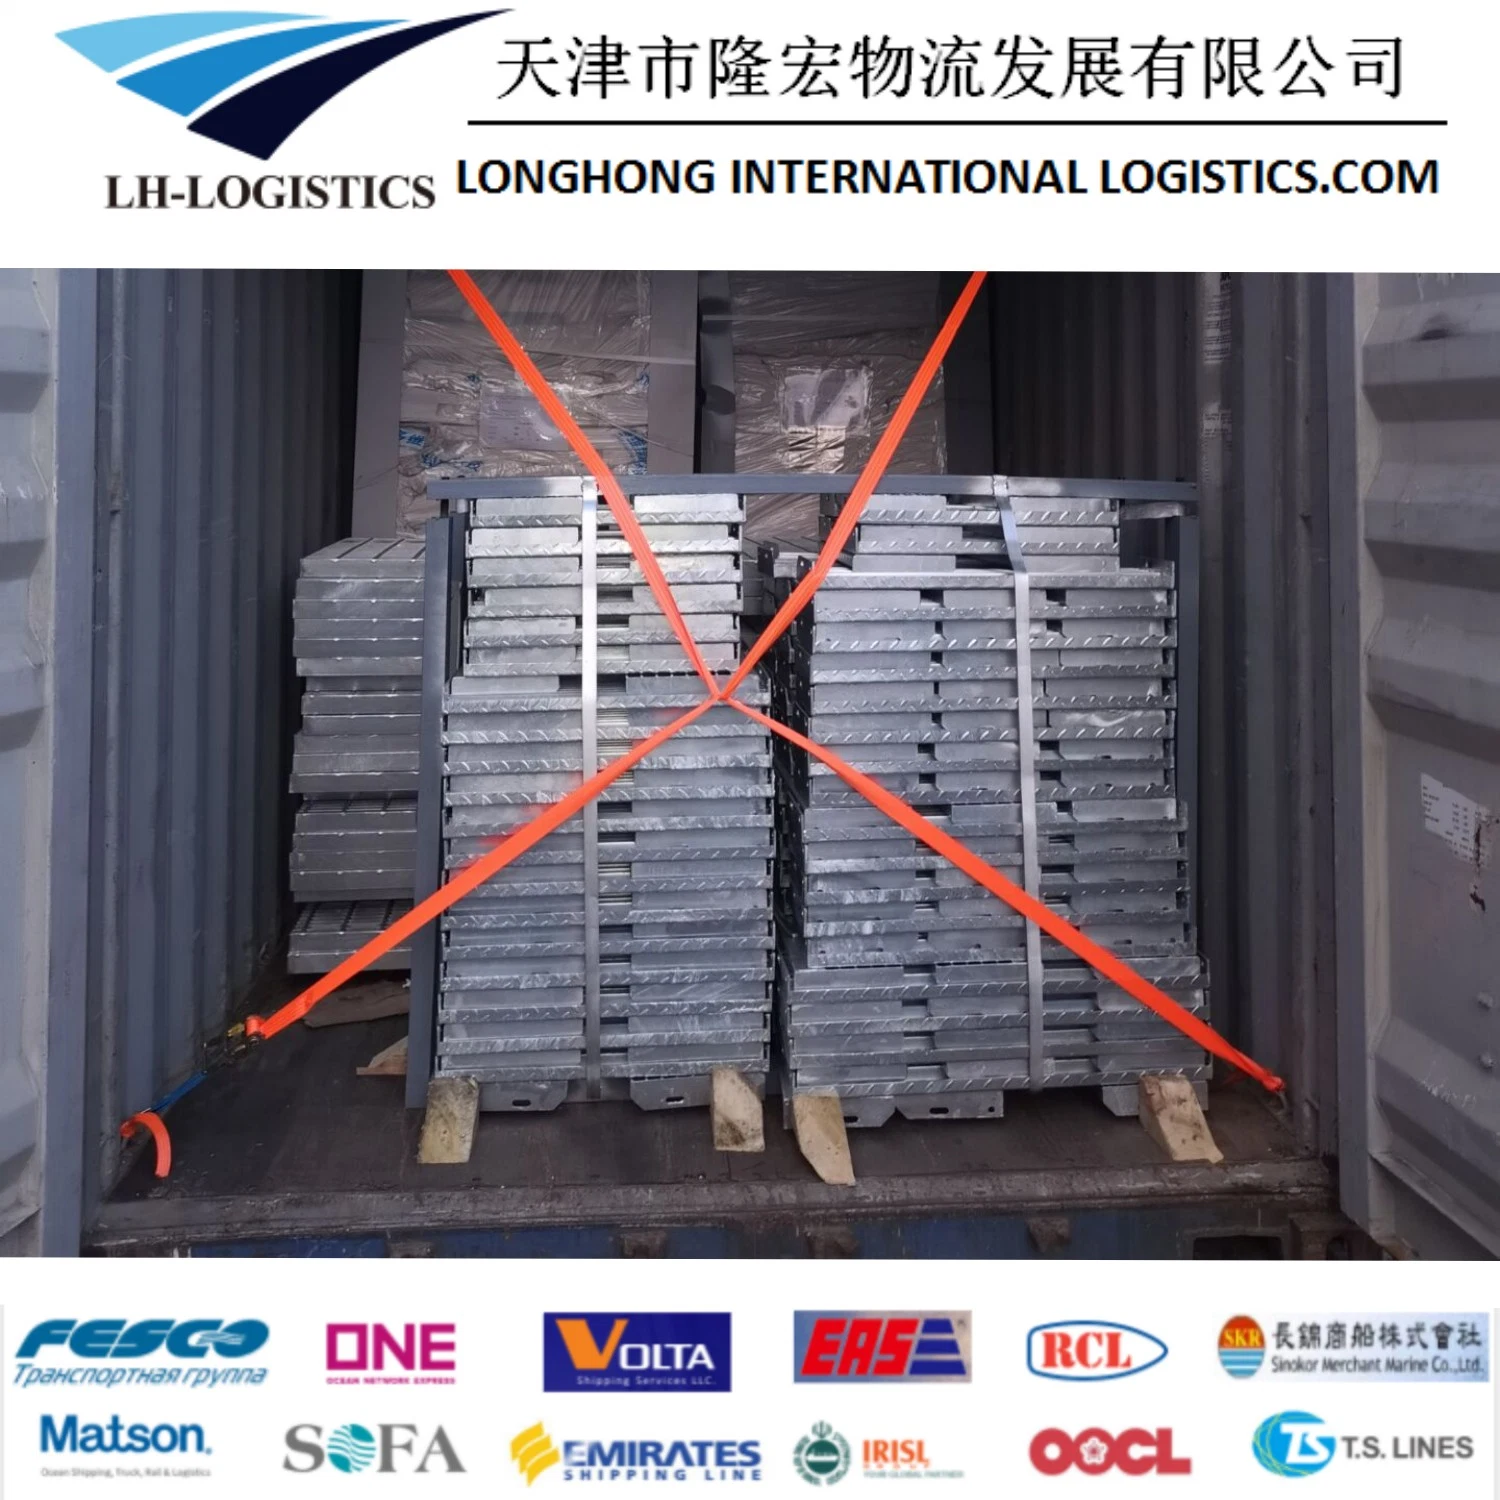 Tarifas baratas de frete expedição Logistics Service Agent da China para Croácia/Polónia/França/Europa